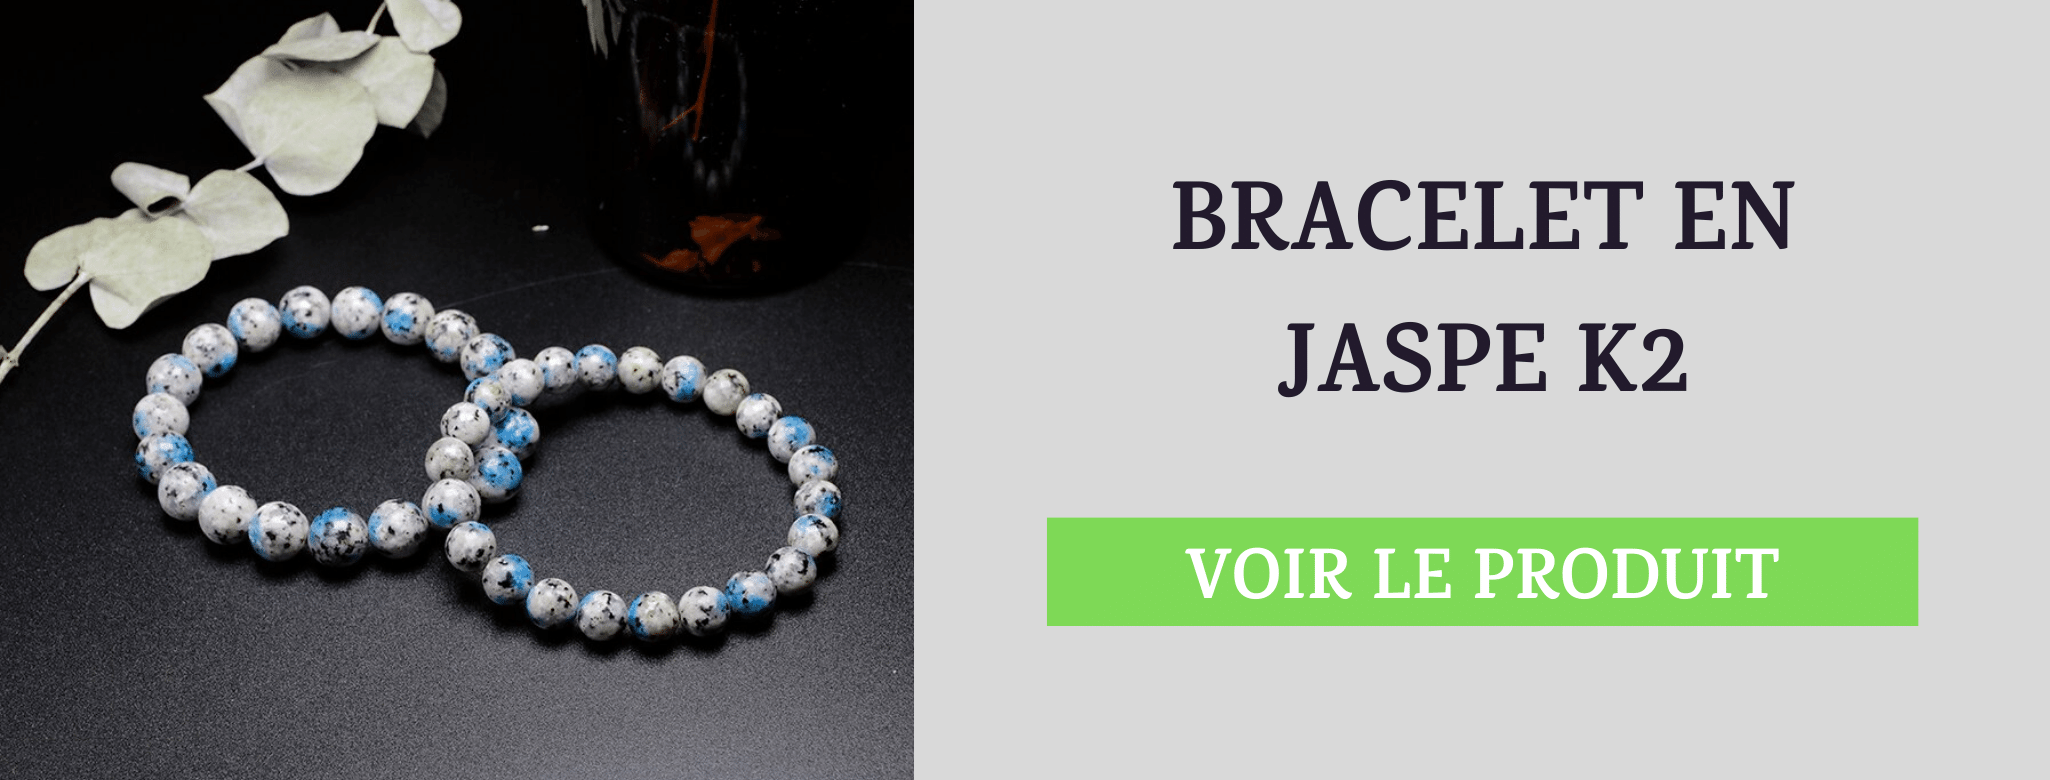 Bracelet Pierre Jaspe K2